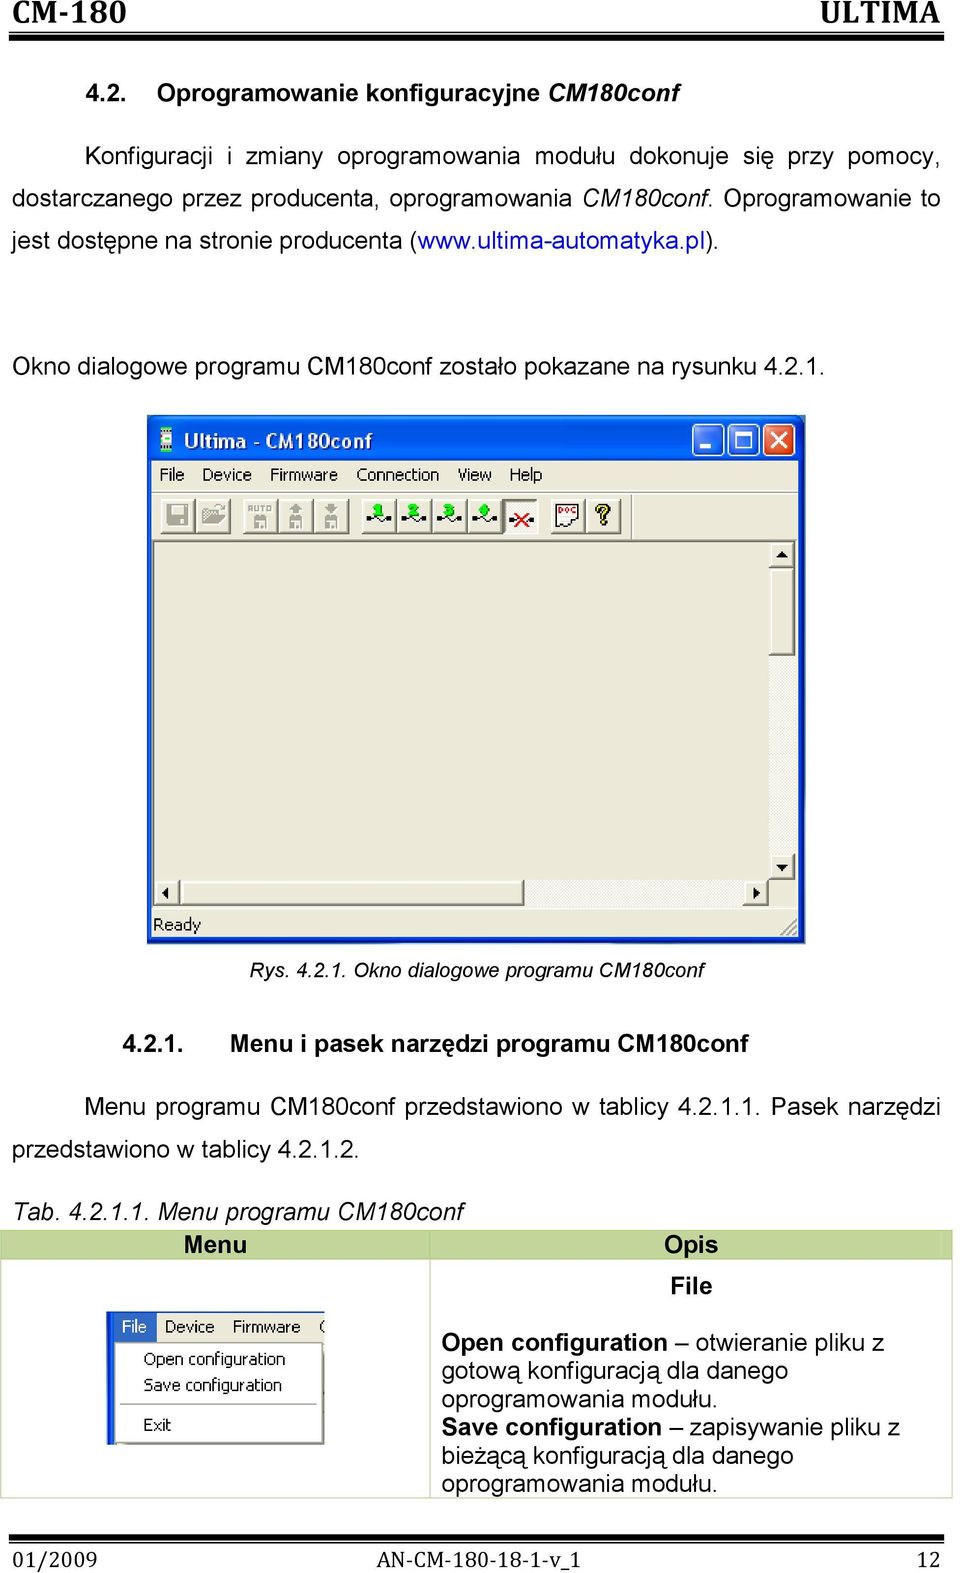 2.1. Menu i pasek narzędzi programu CM180conf Menu programu CM180conf przedstawiono w tablicy 4.2.1.1. Pasek narzędzi przedstawiono w tablicy 4.2.1.2. Tab. 4.2.1.1. Menu programu CM180conf Menu Opis File Open configuration otwieranie pliku z gotową konfiguracją dla danego oprogramowania modułu.